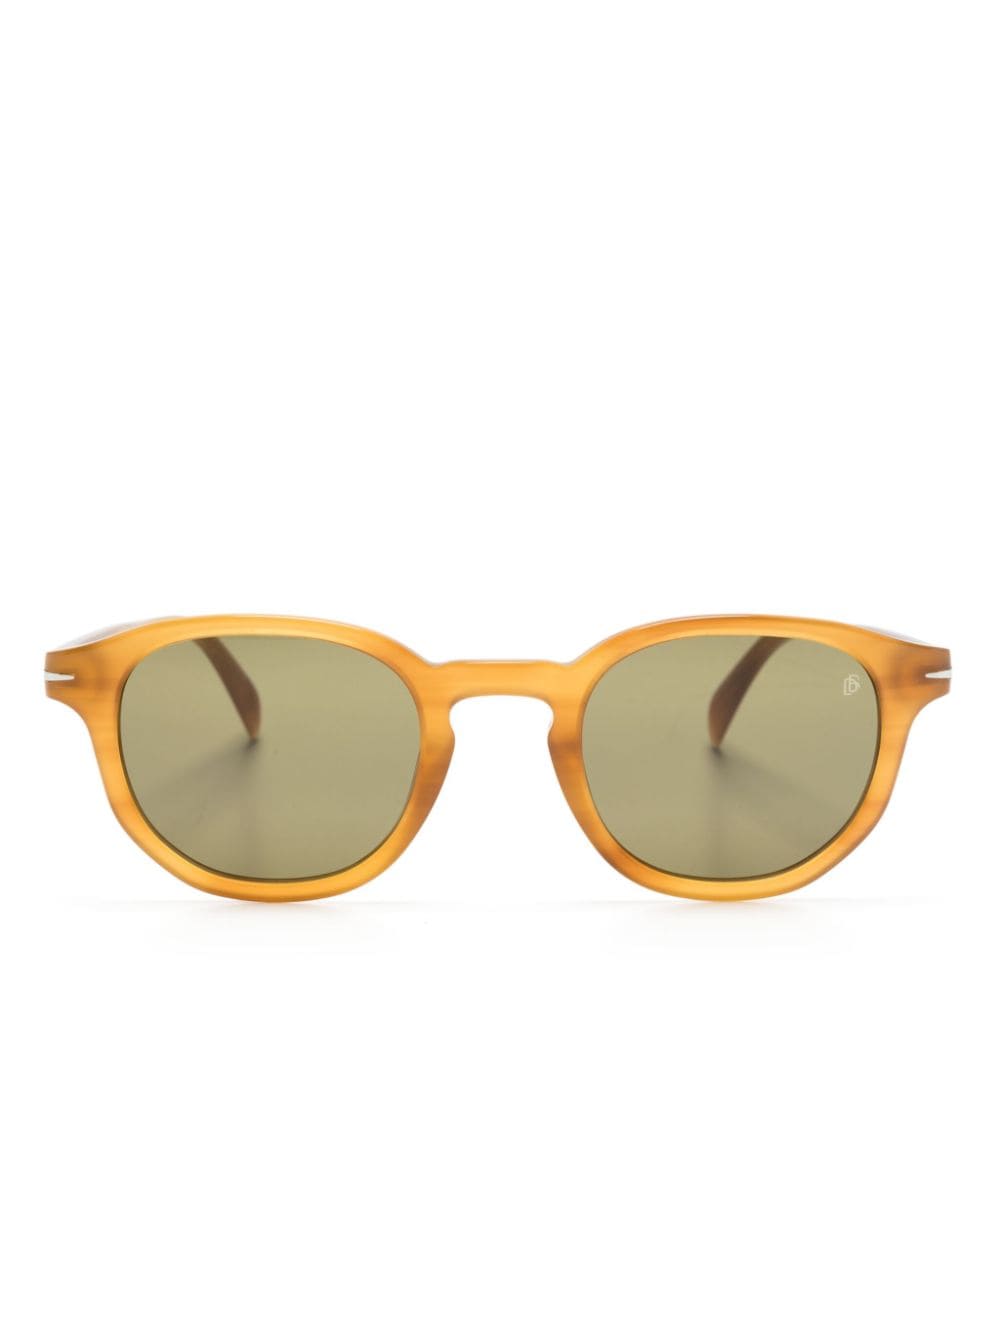 Eyewear By David Beckham 1007/s Round-frame Sunglasses In Neutrals